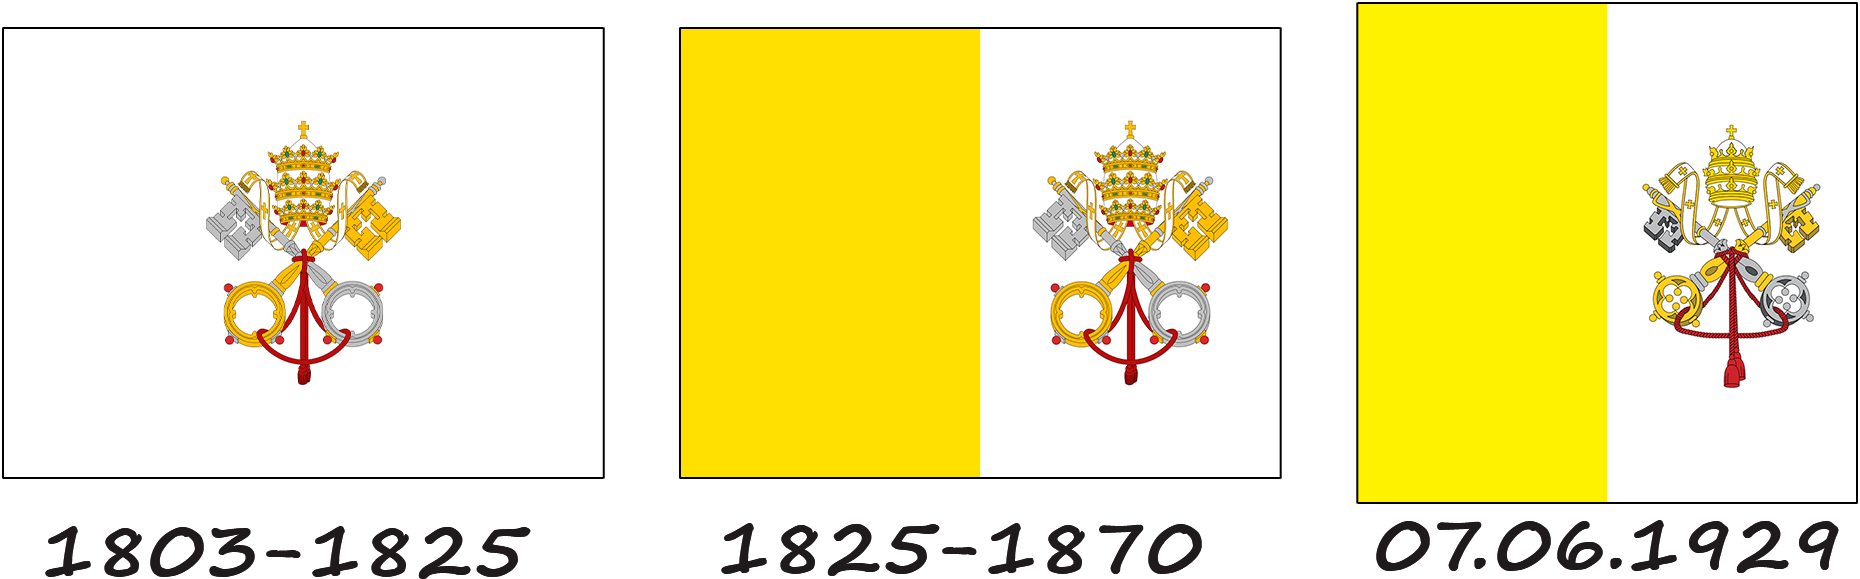 Histoire du drapeau du Vatican